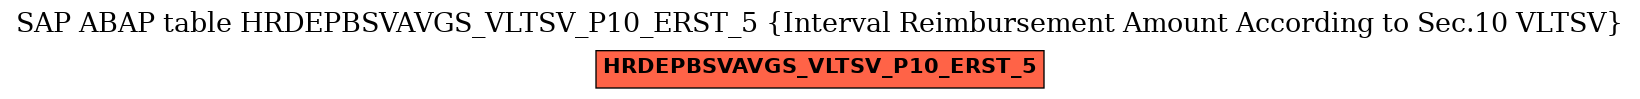 E-R Diagram for table HRDEPBSVAVGS_VLTSV_P10_ERST_5 (Interval Reimbursement Amount According to Sec.10 VLTSV)